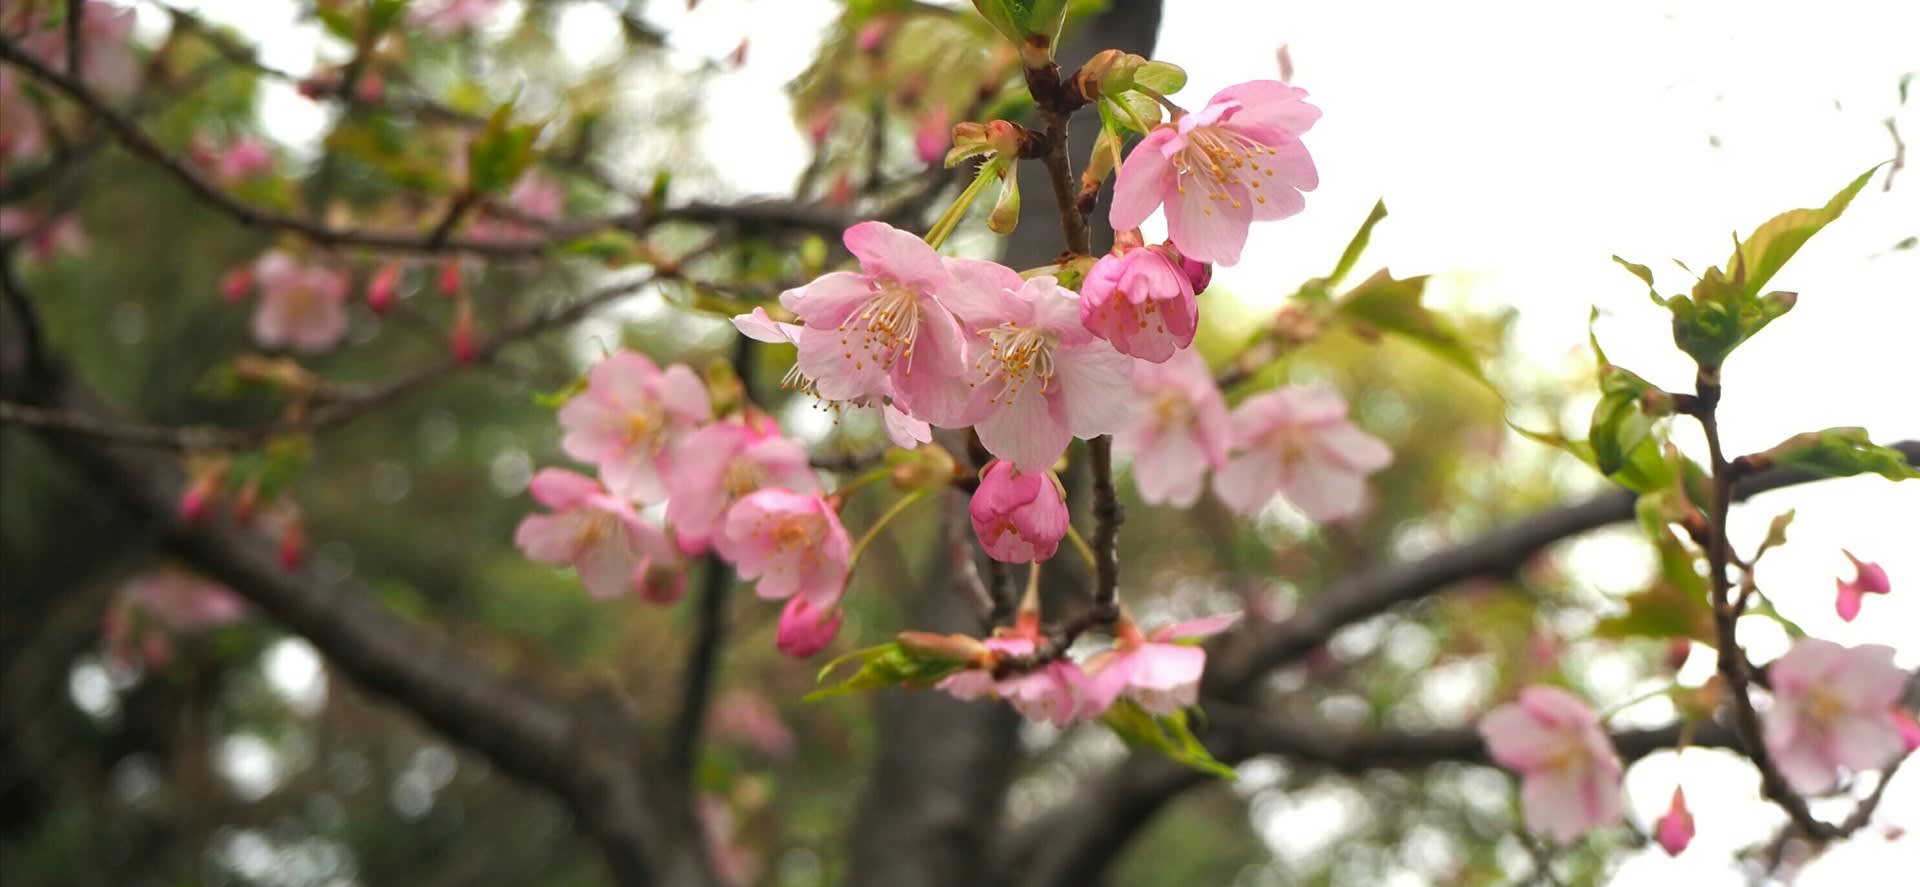 三十三間堂の河津桜と春の花いろいろ 京都で定年後生活